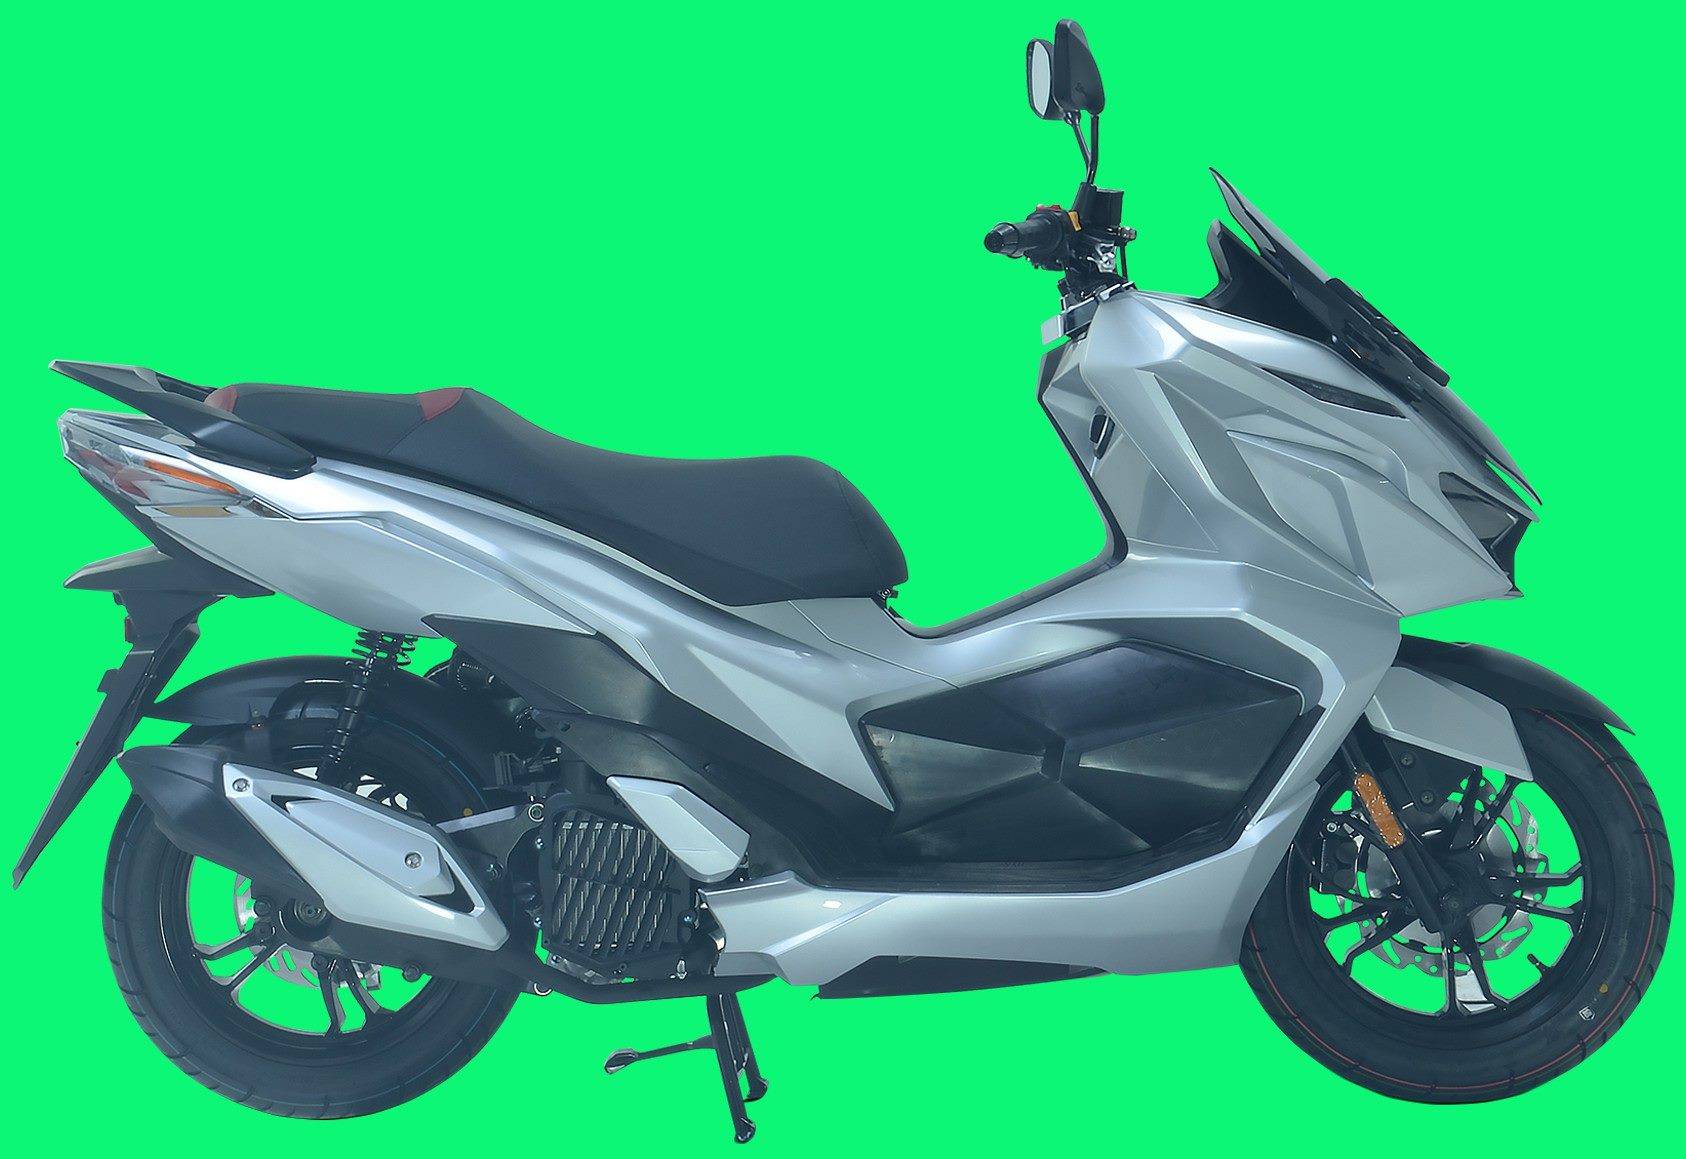 gpx sym scooter 7 WARUNGASEP